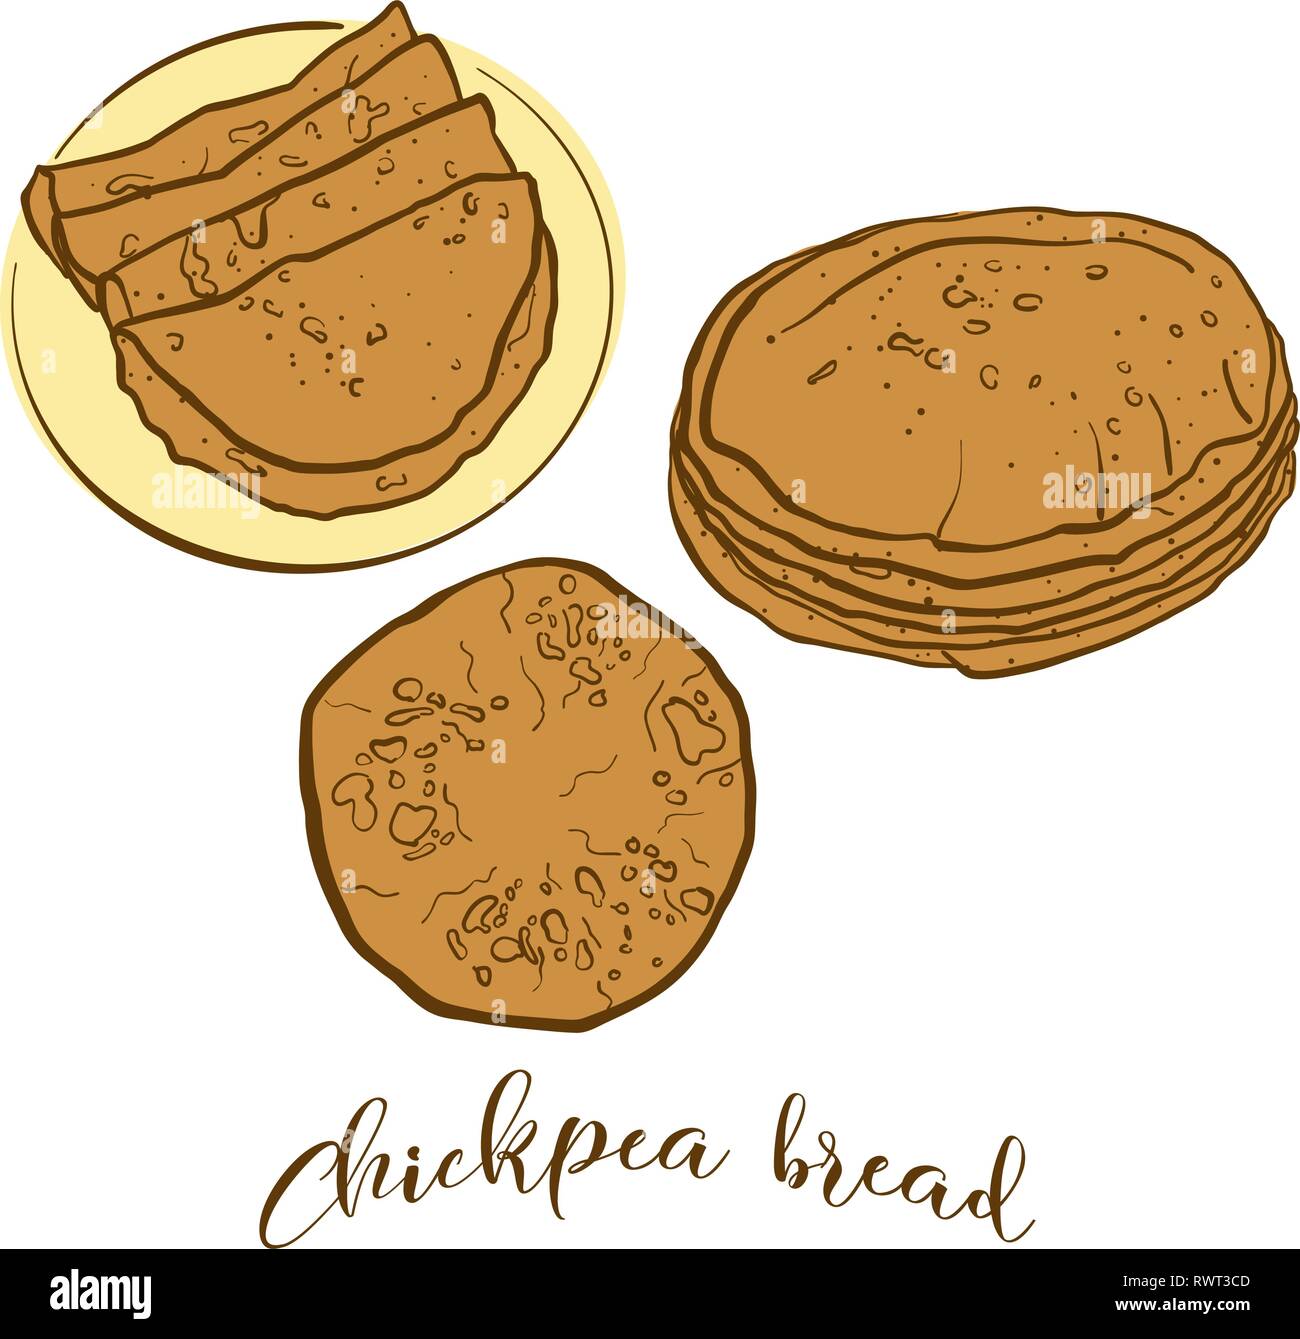 Farbige Skizzen von Chapati Brot. Vektor Zeichnung von Fladenbrot Essen, in der Regel in Südostasien bekannt. Farbige Brot Abbildung Serie. Stock Vektor